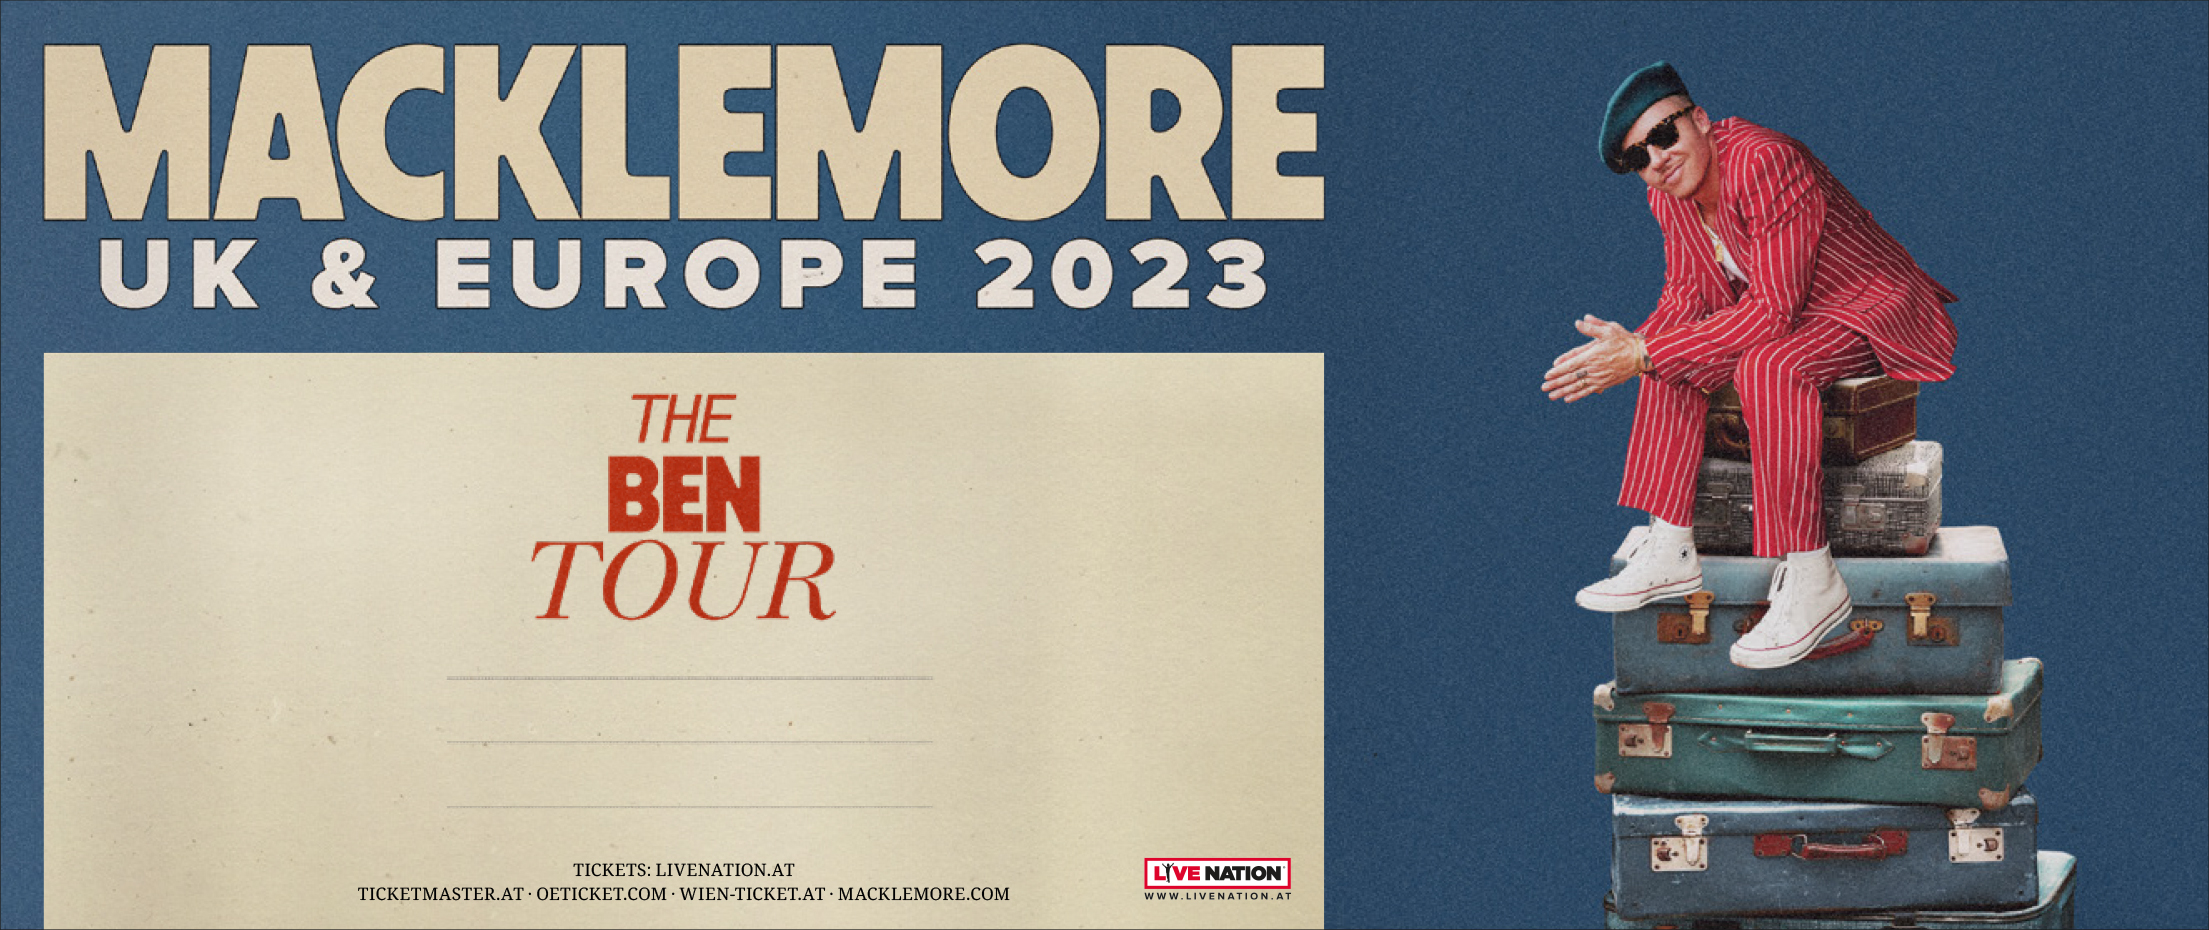 Macklemore am 30. April 2023 @ Wiener Stadthalle - Halle D.